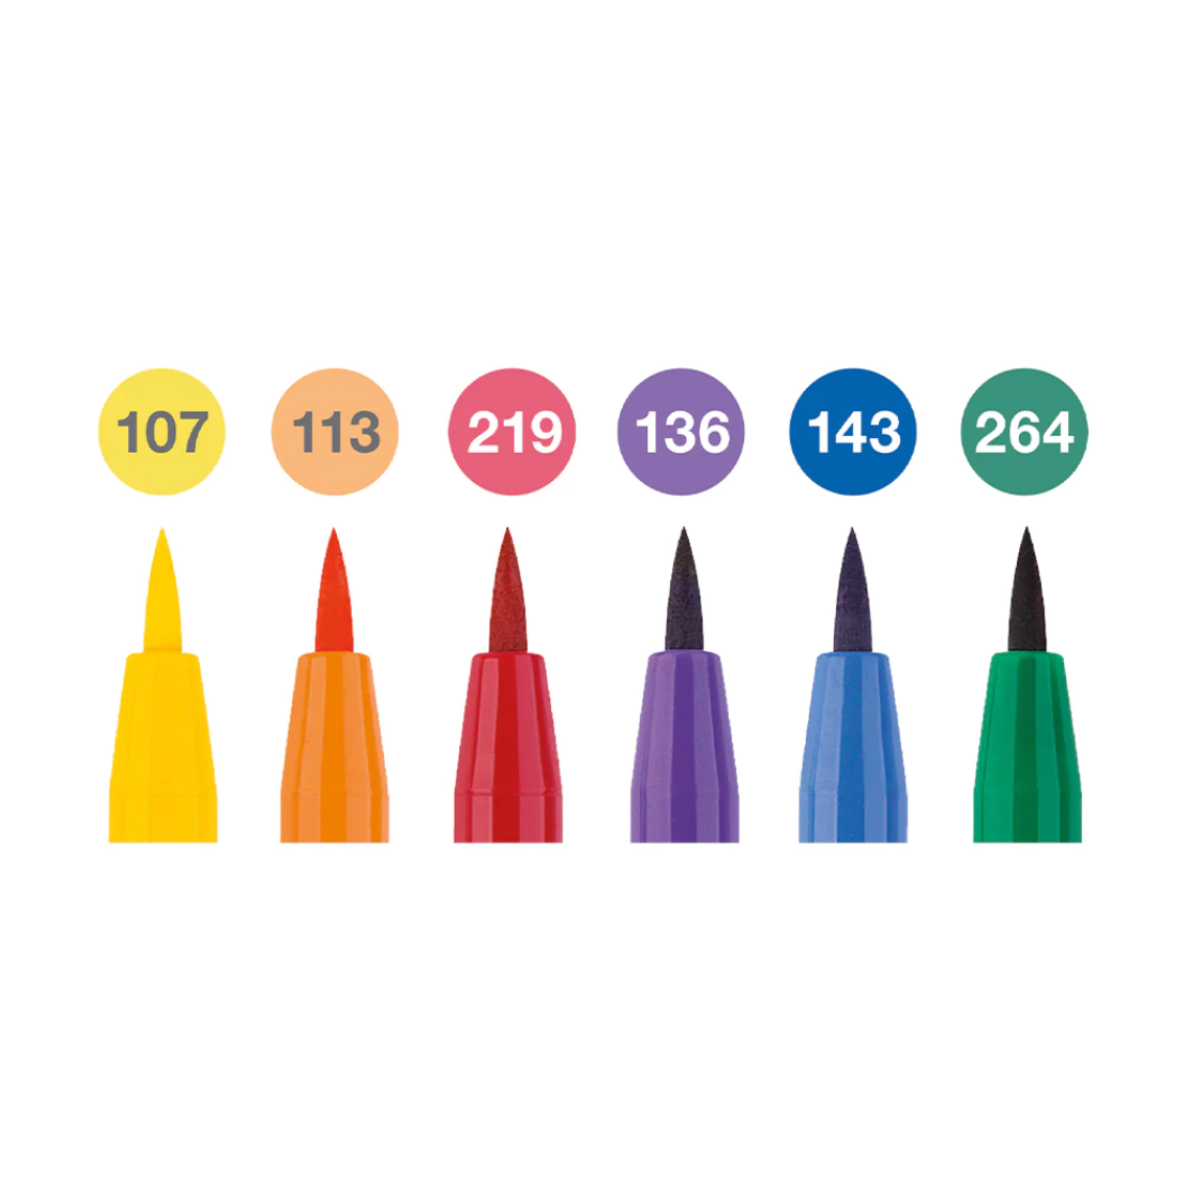 Faber-Castell Pitt Artist Brush Pen "Colour Wheel" Set of 6